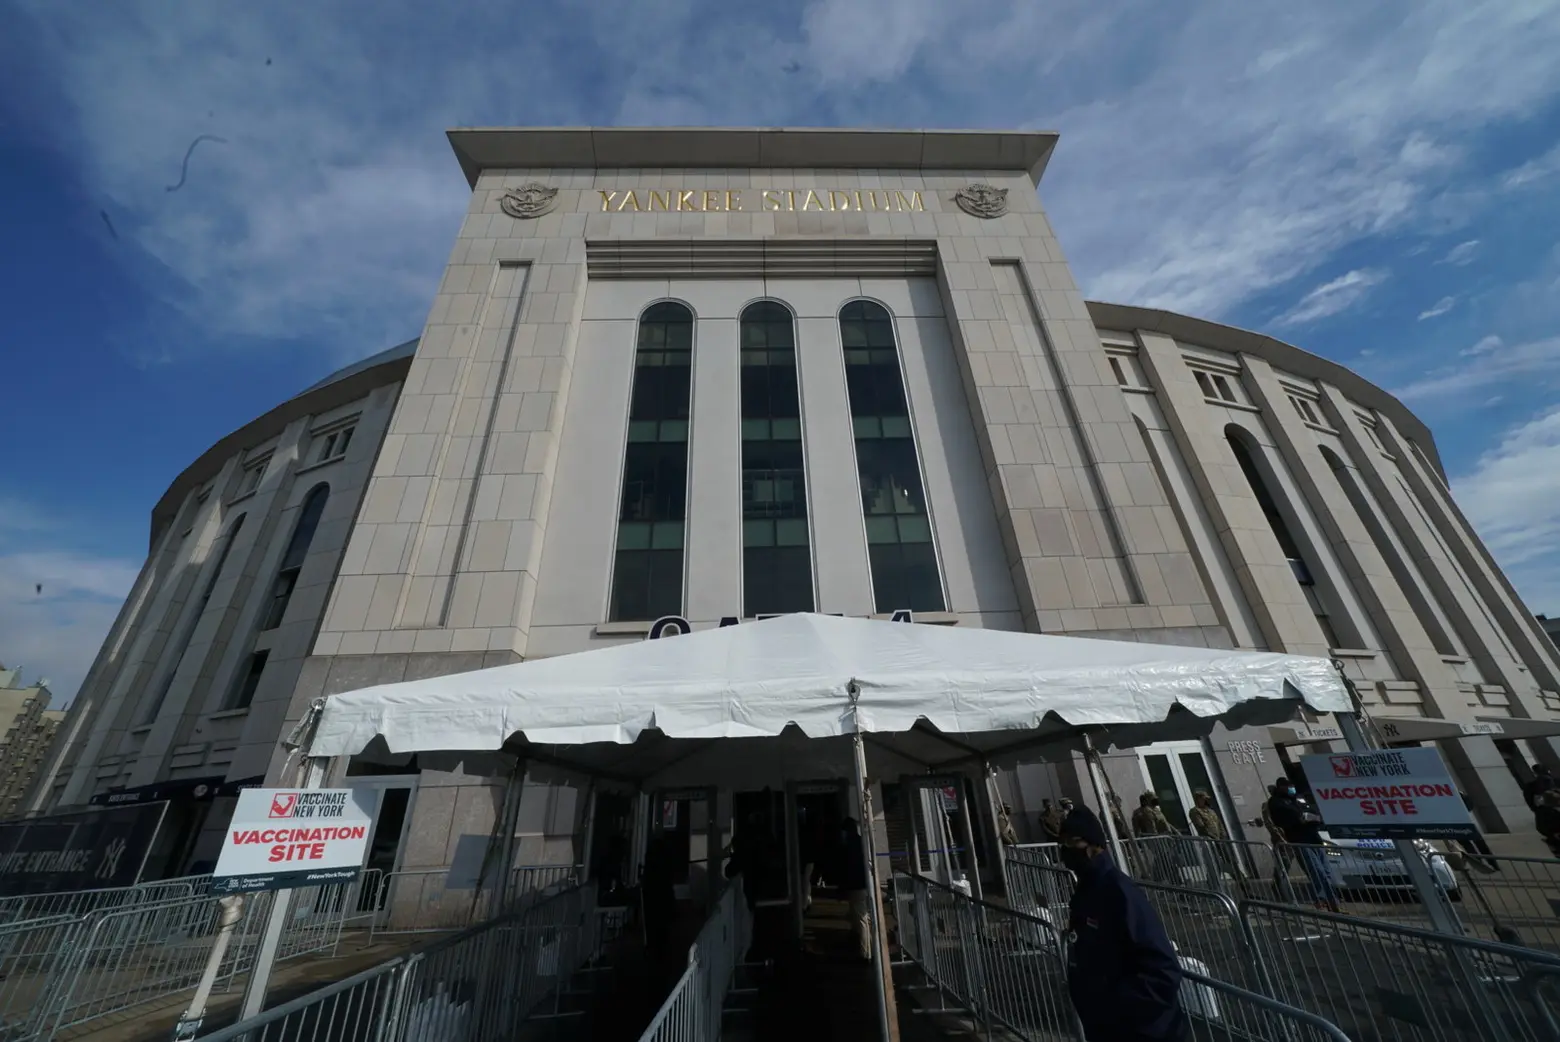 New York will administer Johnson & Johnson vaccine overnight at Javits Center, Yankee Stadium this week